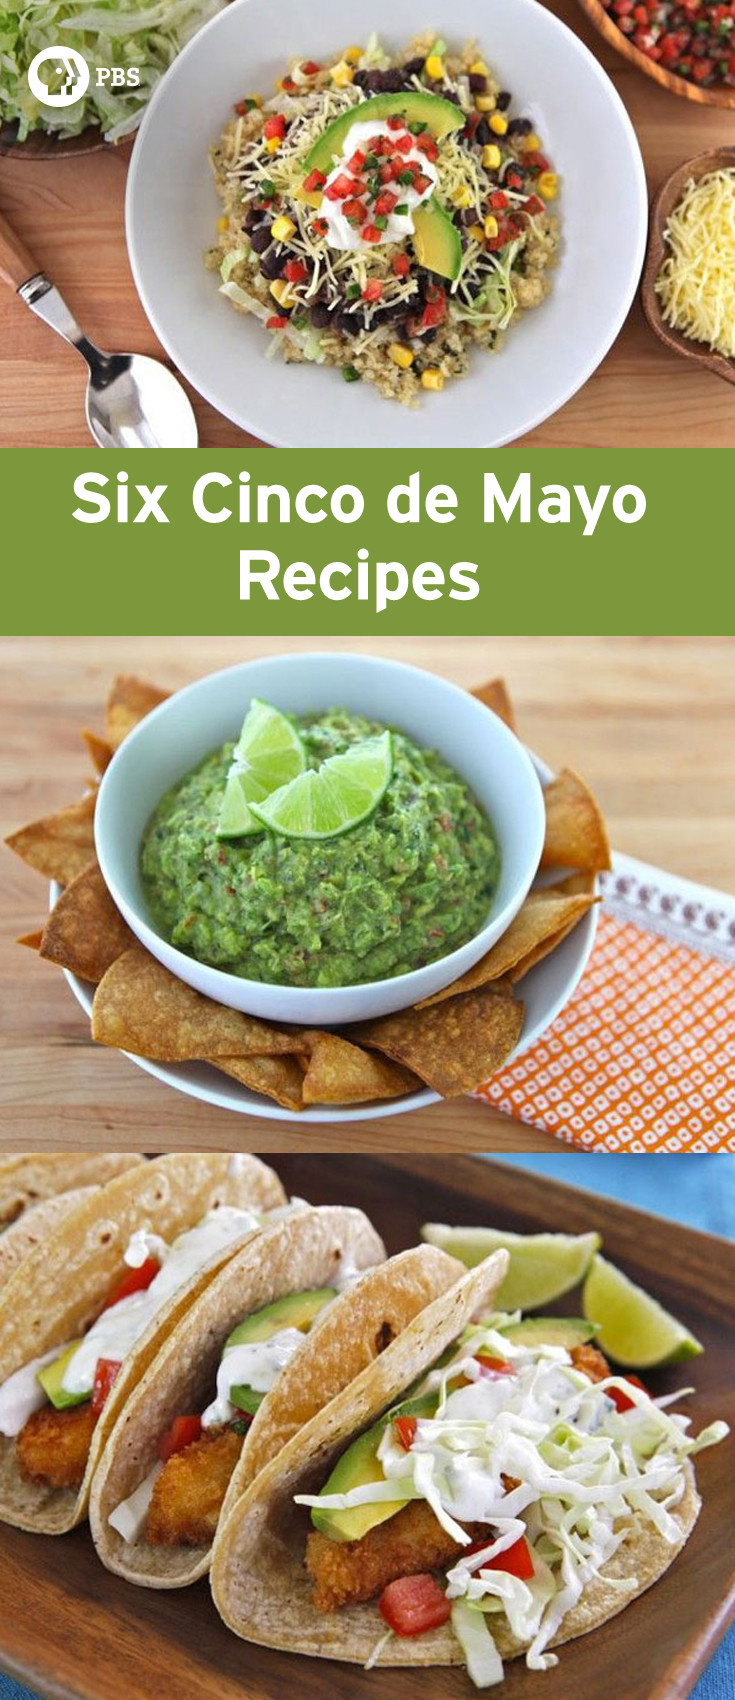 Mexican Food For Cinco De Mayo
 Cinco de Mayo Recipes The History Kitchen